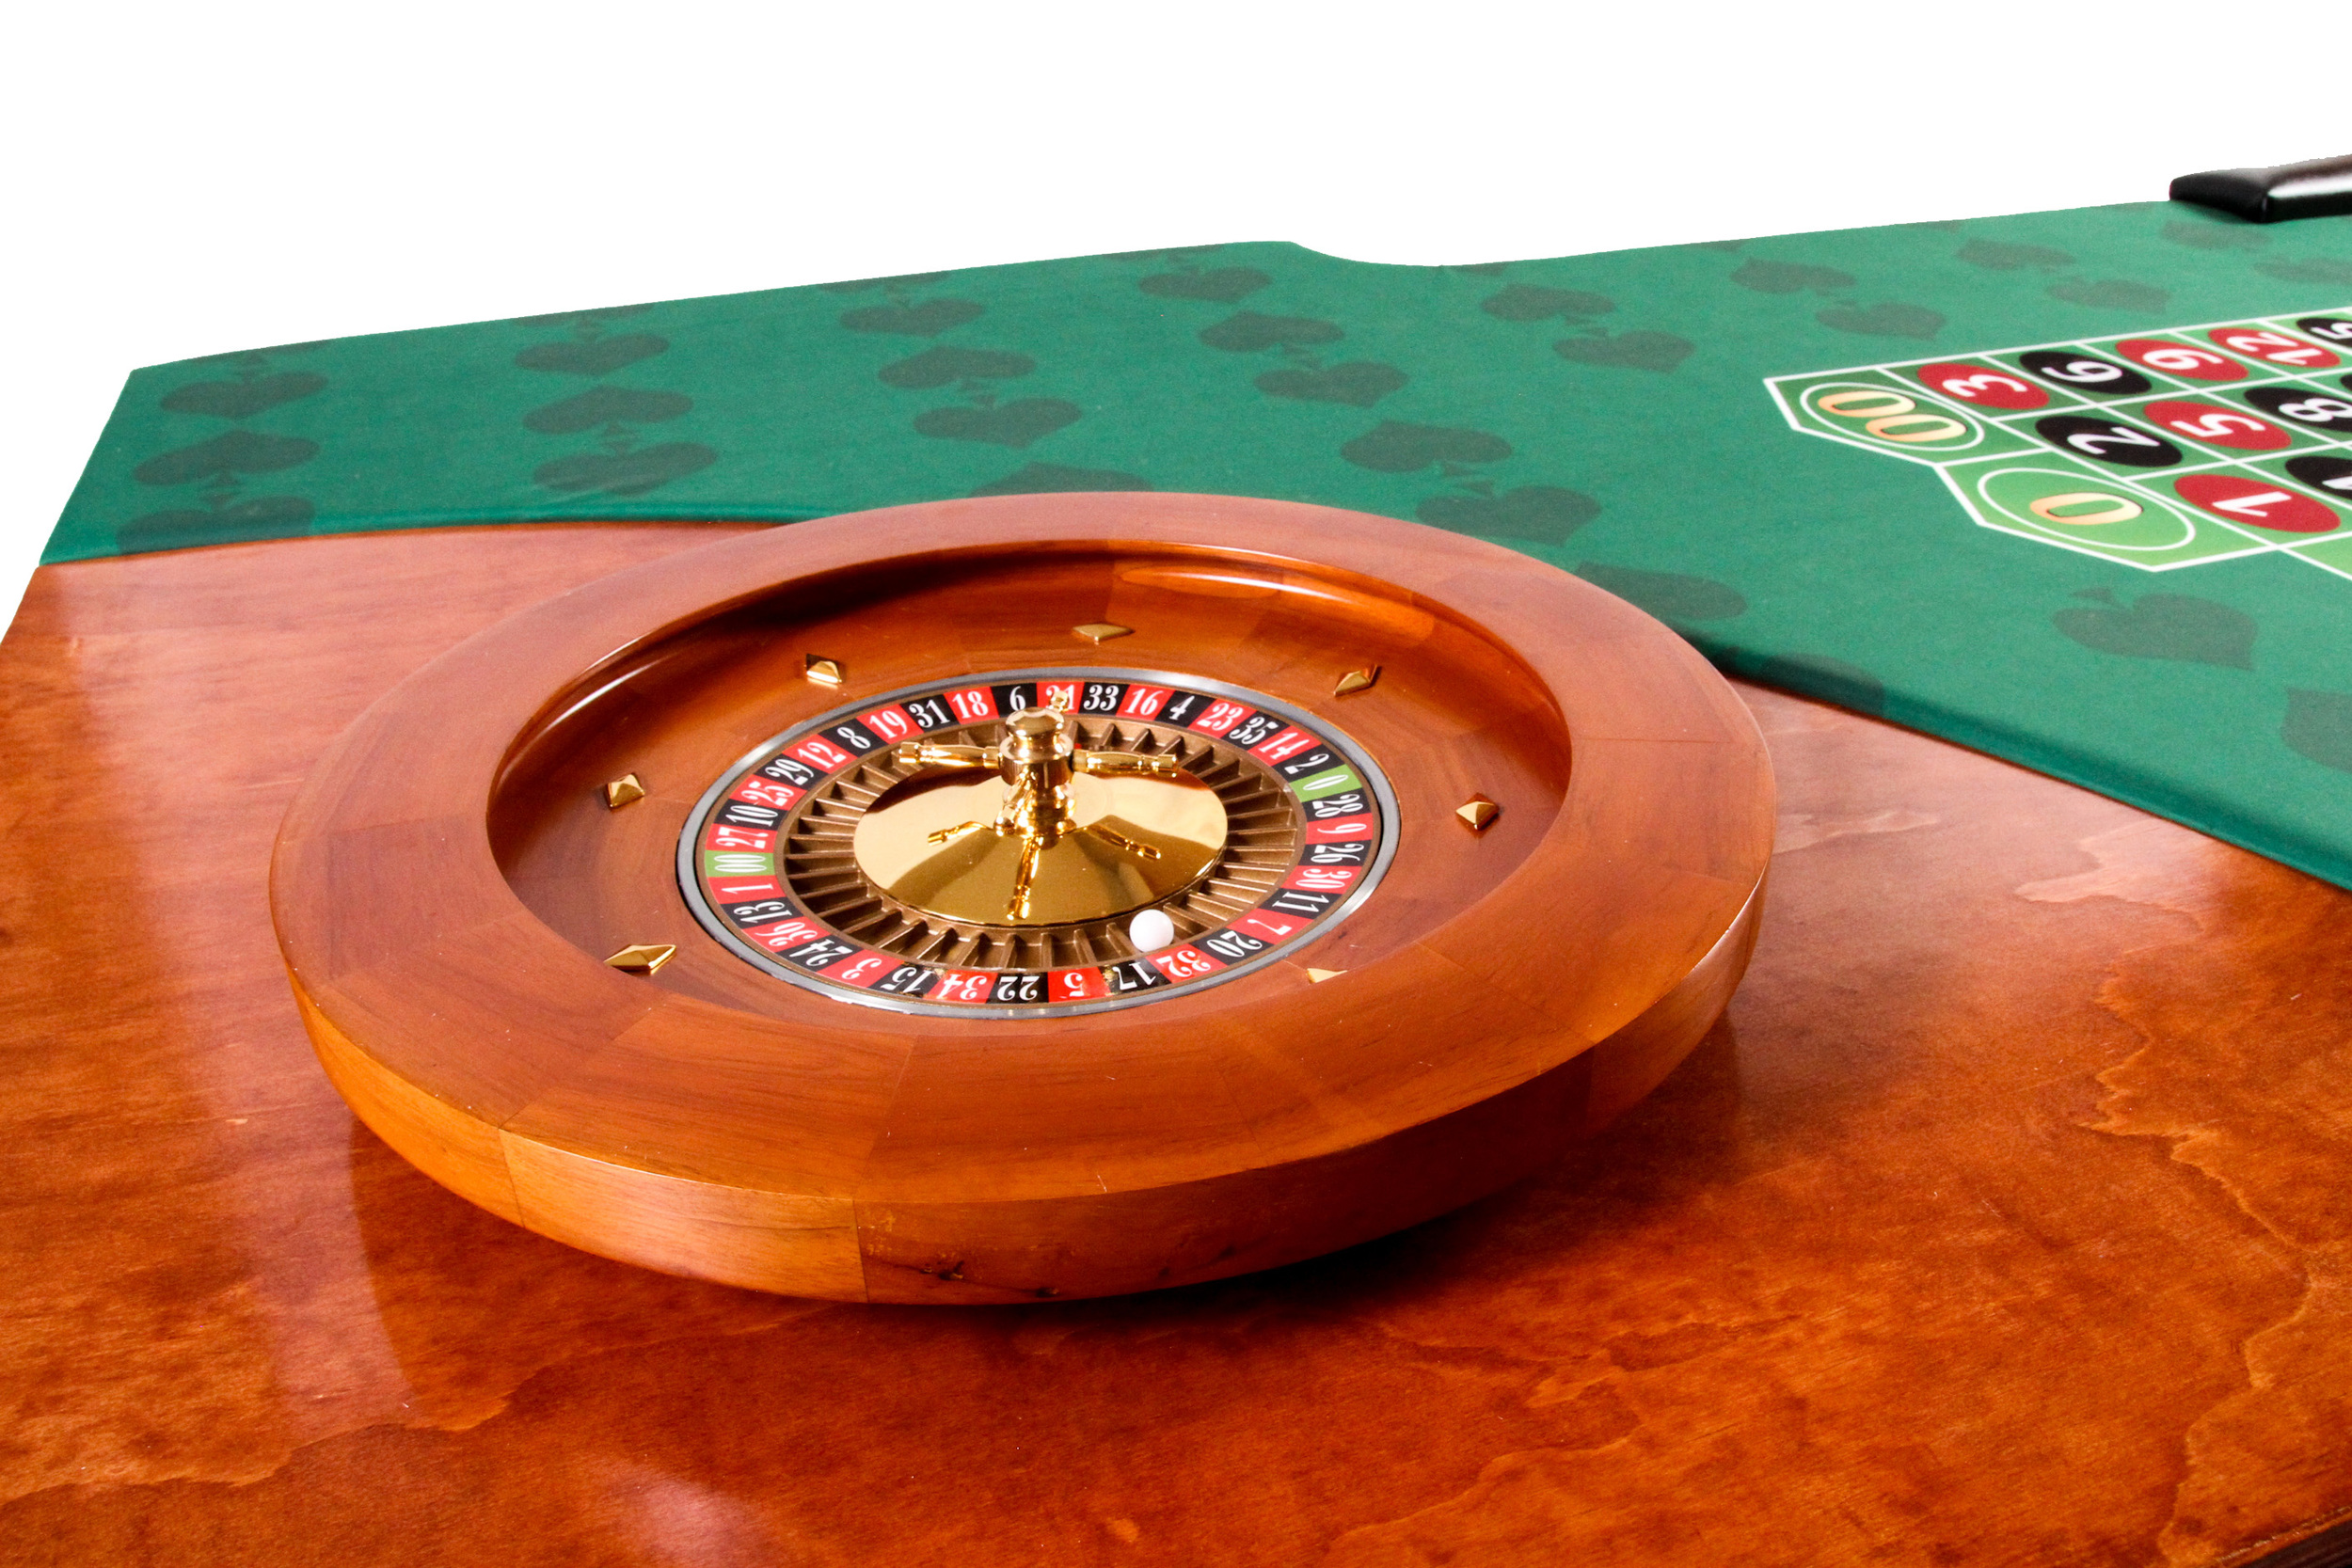 Casino Las Vegas - Table de Jeux de hasard - Levée de Fond - Fondation -  Poker - Black Jack - Roulette - Animation Concept